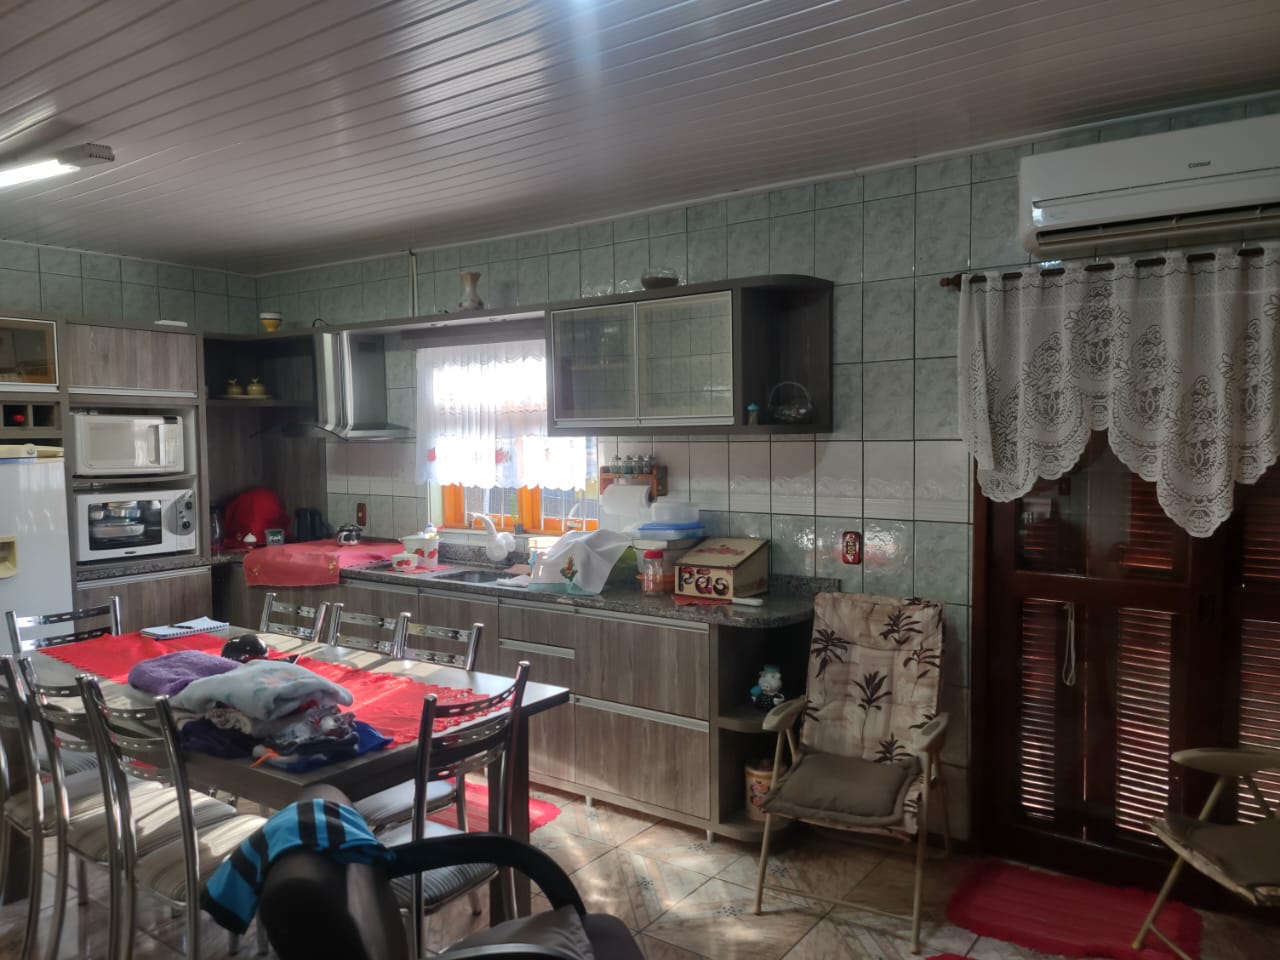 Fotos do imóvel Linda casa em campo Vicente Nova Hartz - Sparrenberger Imóveis